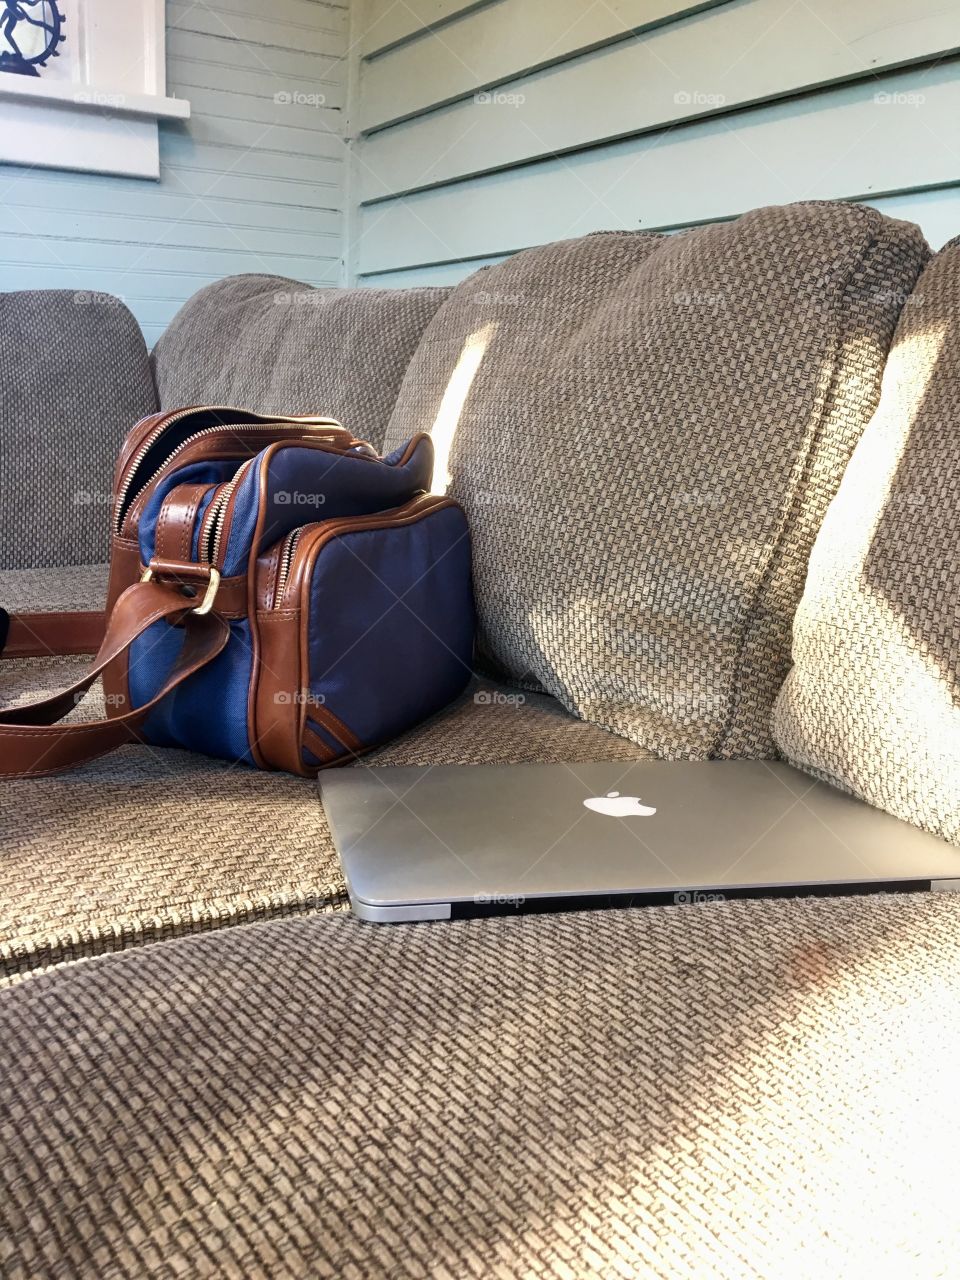 A blue bookbag and a MacBook 